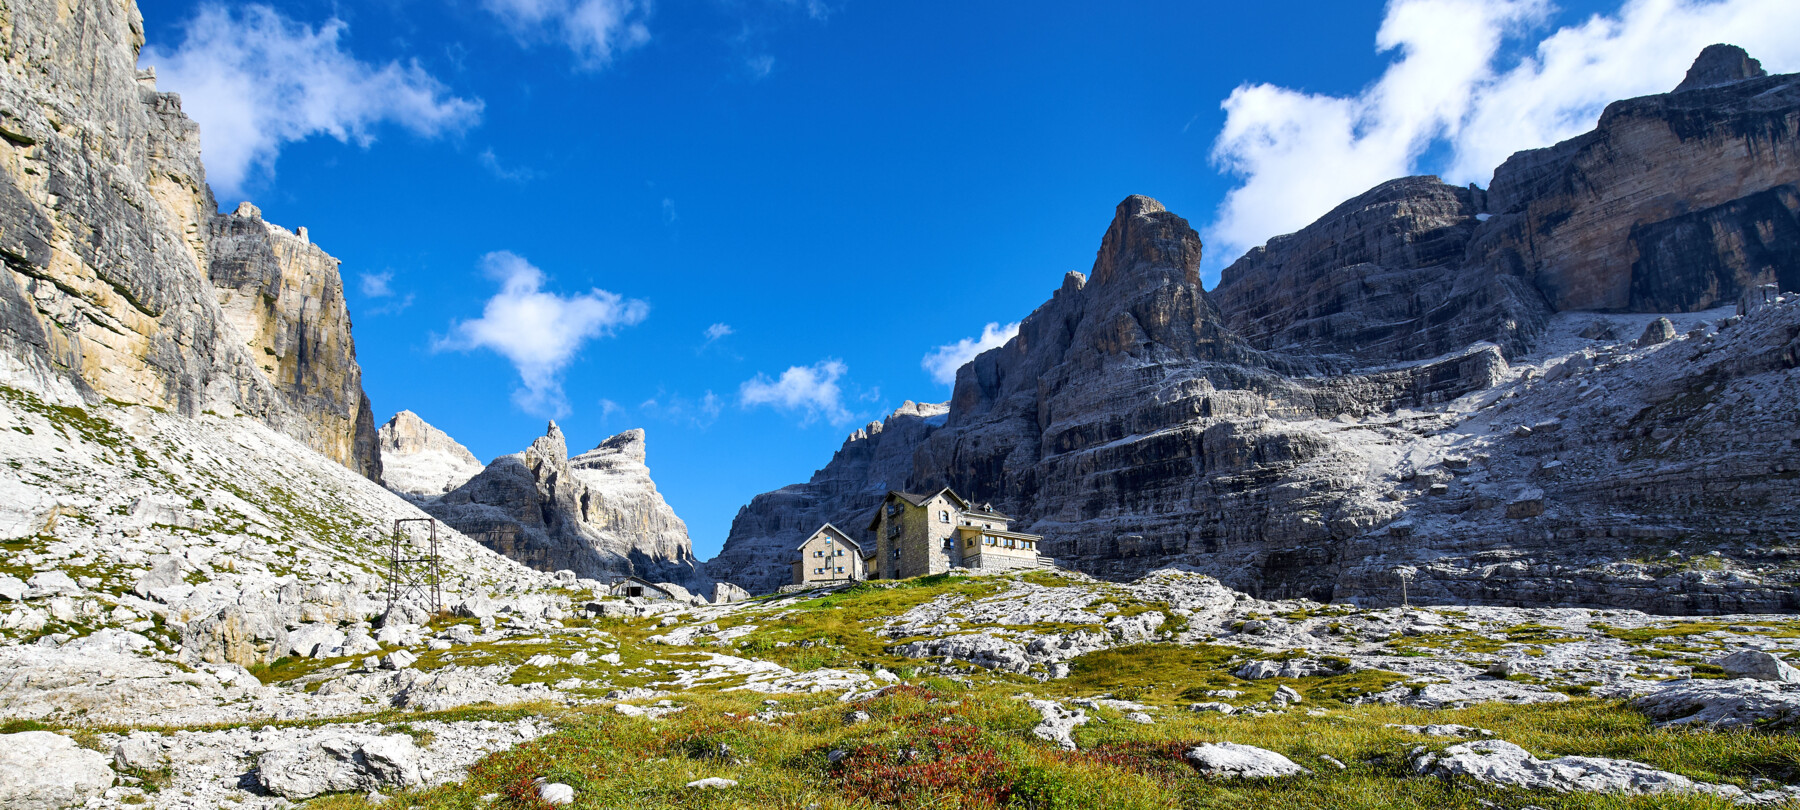 Dolomiti di Brenta - Rifugio Tuckett Quintino Sella | © Paolo Bisti - Luconi